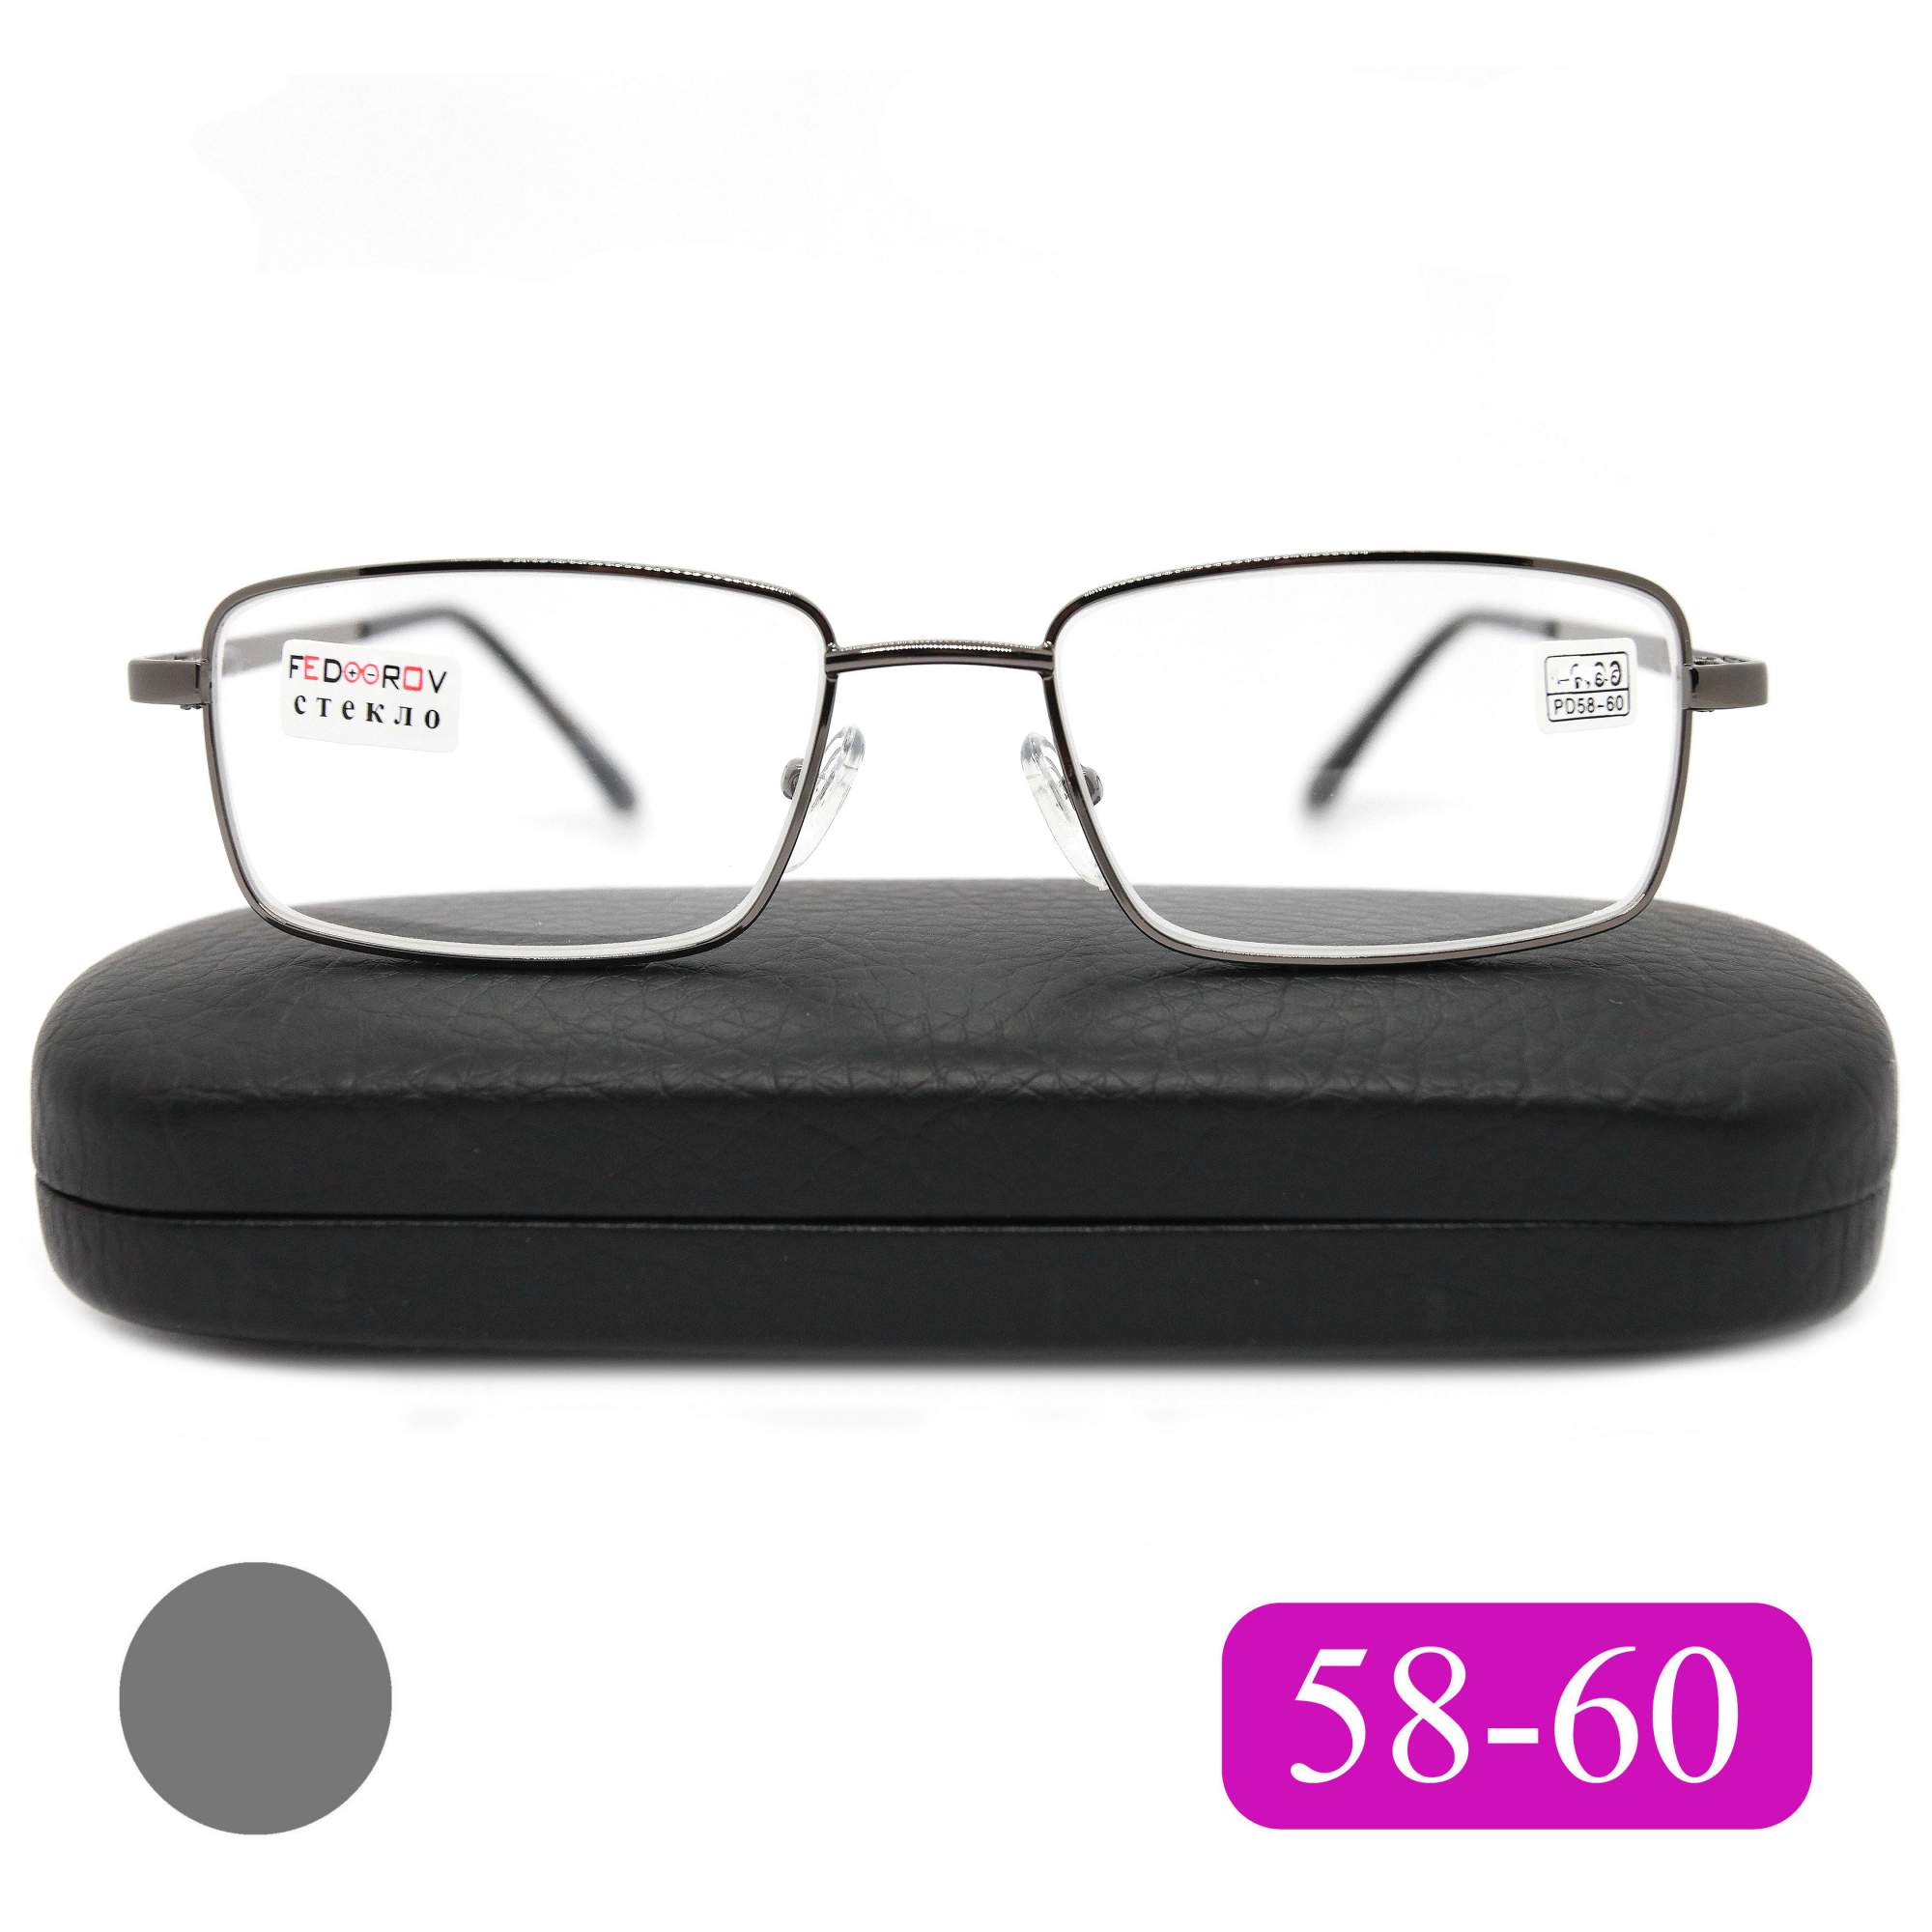 Готовые очки Fedrov 569, со стеклянной линзой, +2,00, c футляром, цвет серый, РЦ 58-60